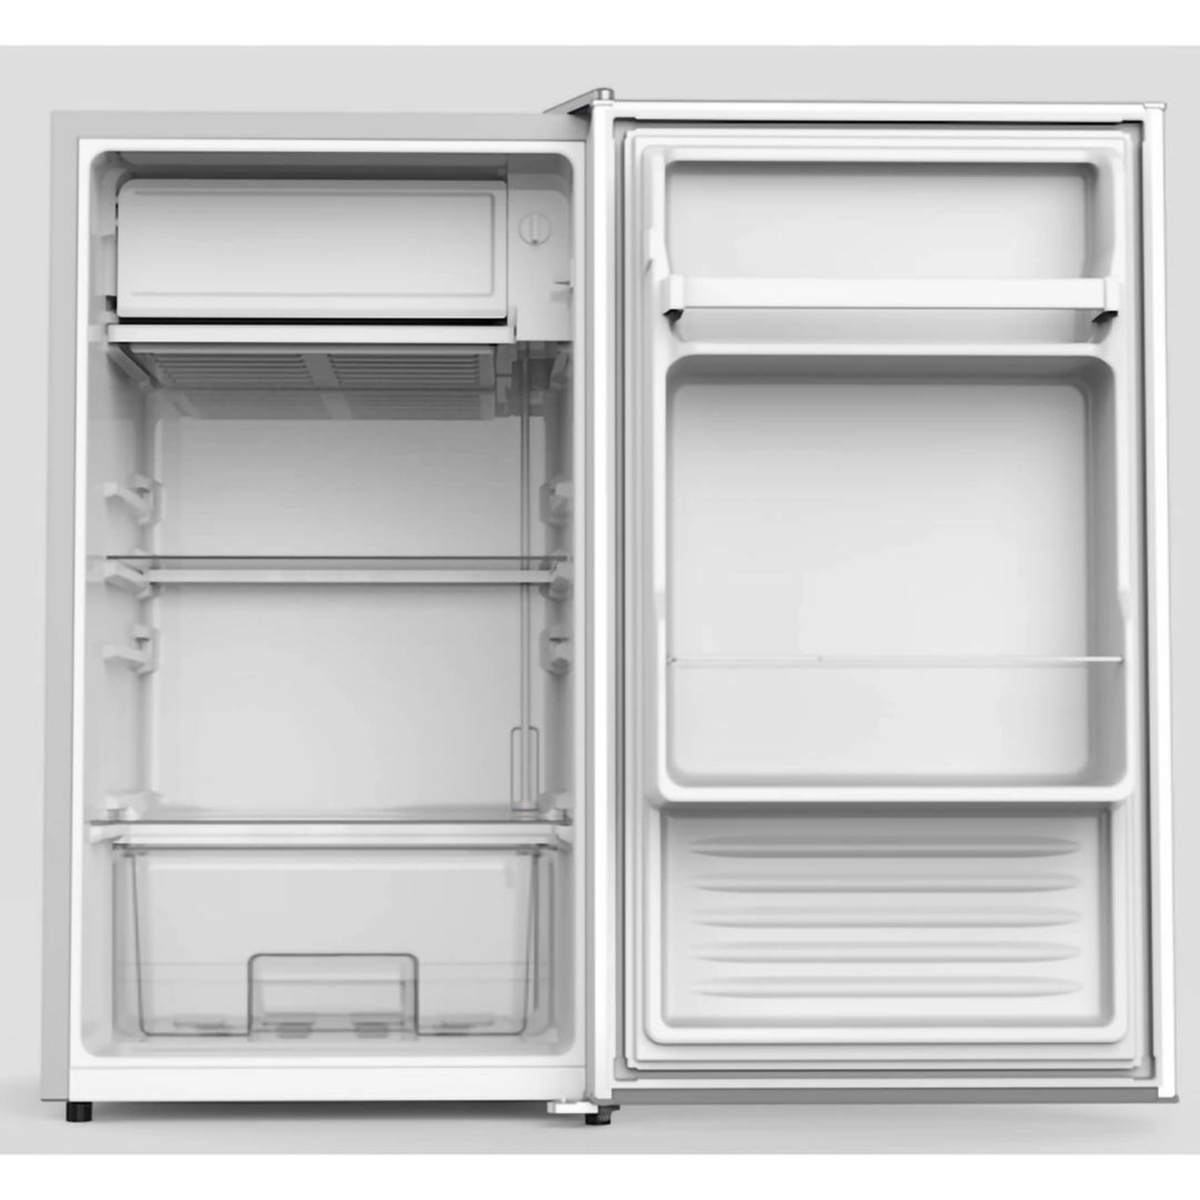 Aftron Single Door Refrigerator, 90 L, Grey, AFR135HS